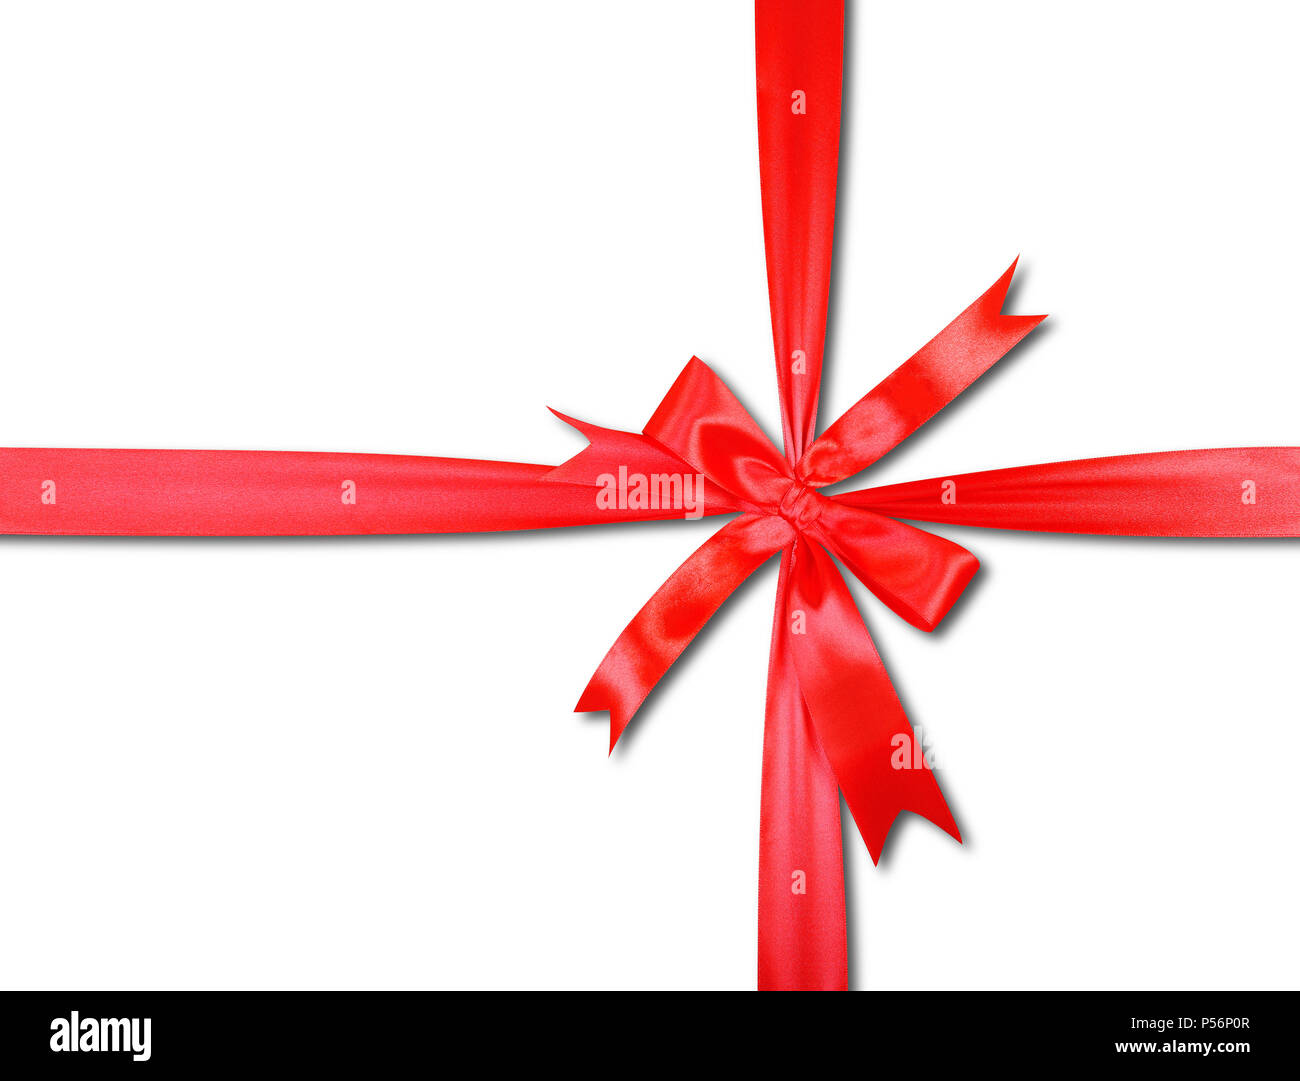 Geschenke, Shopping und präsentieren - Ansicht von oben Geschenkbox wird durch eine rote Schleife gebunden isoliert Stockfoto